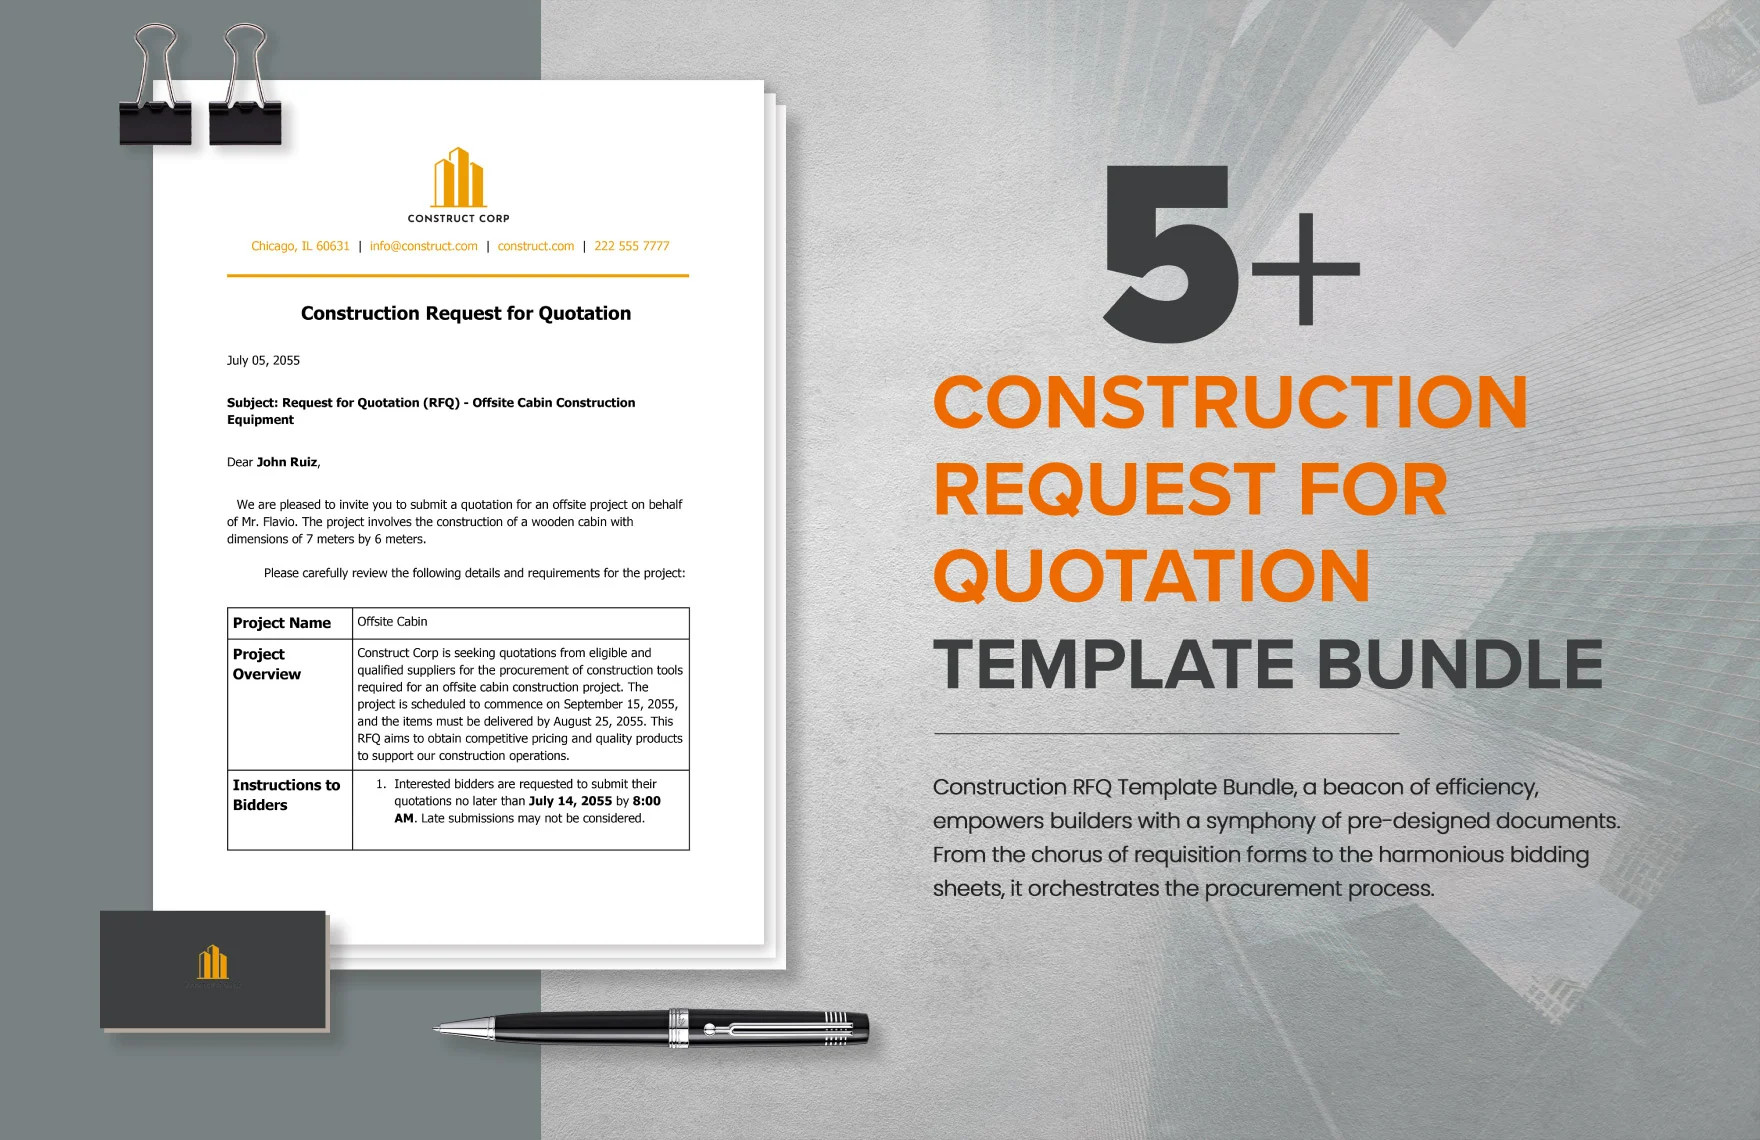 5 construction request for quotation template bundle